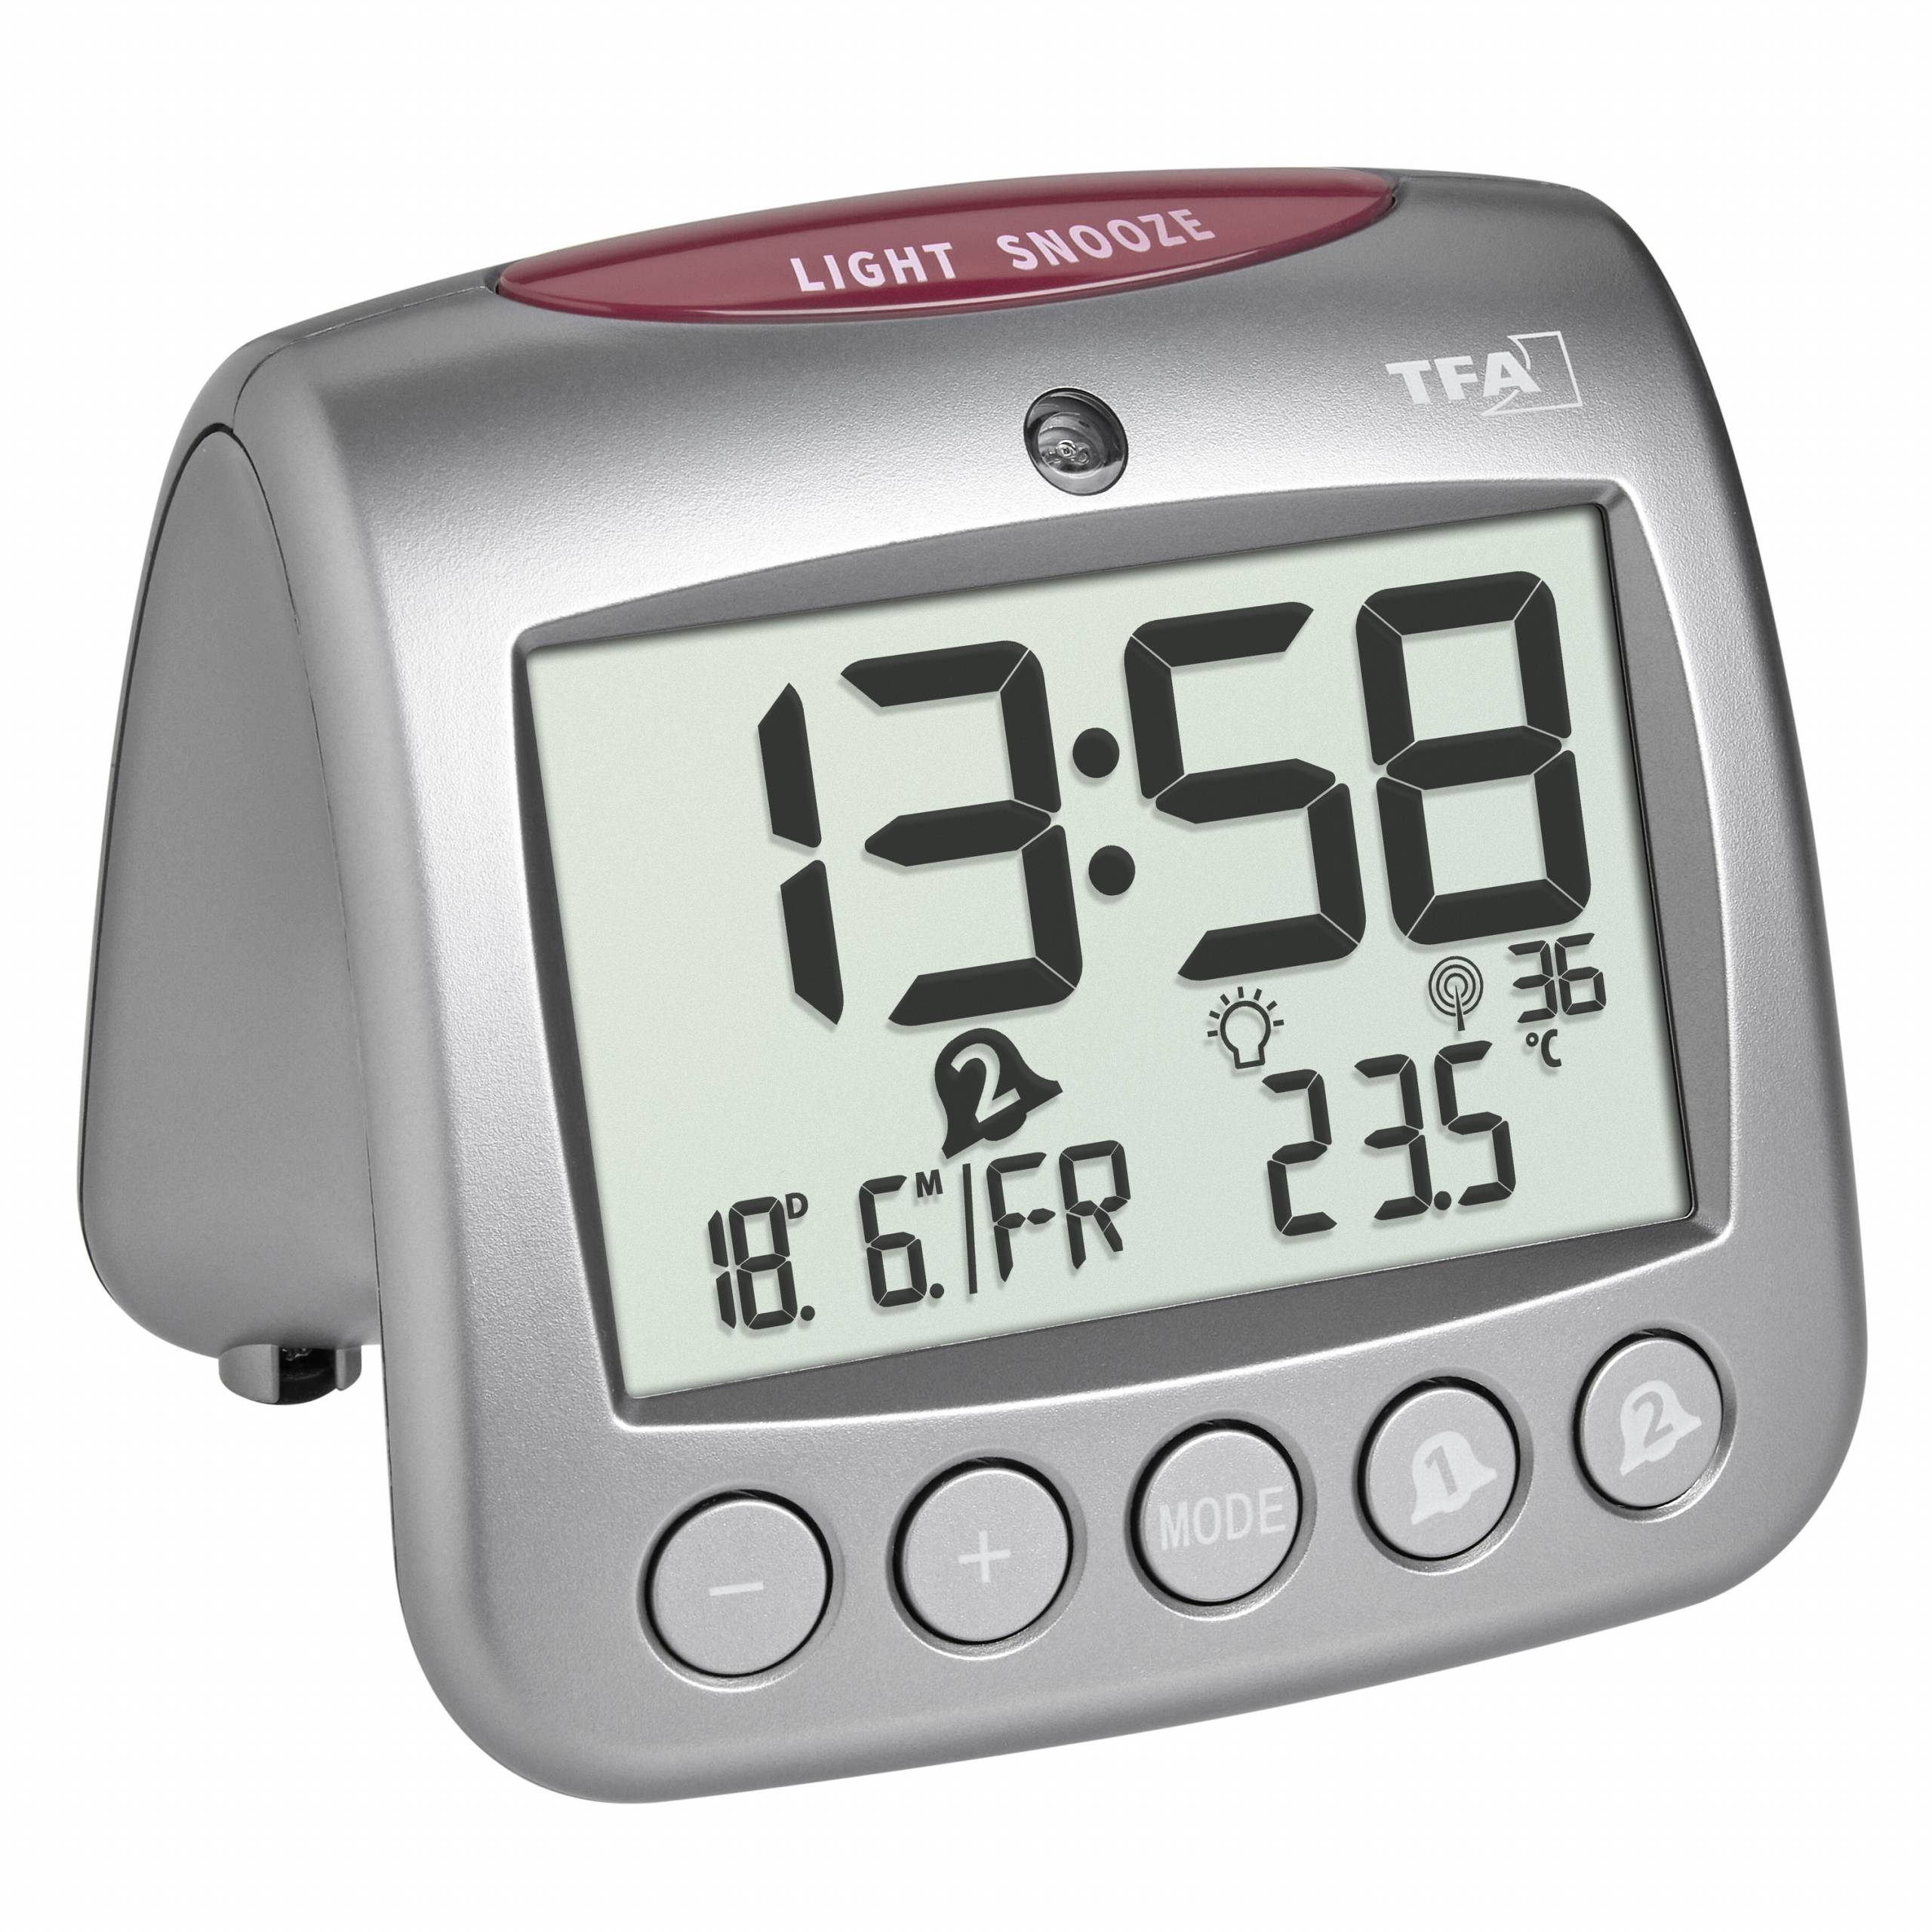 Digital radio-controlled alarm clock with temperature SONIO 2.0